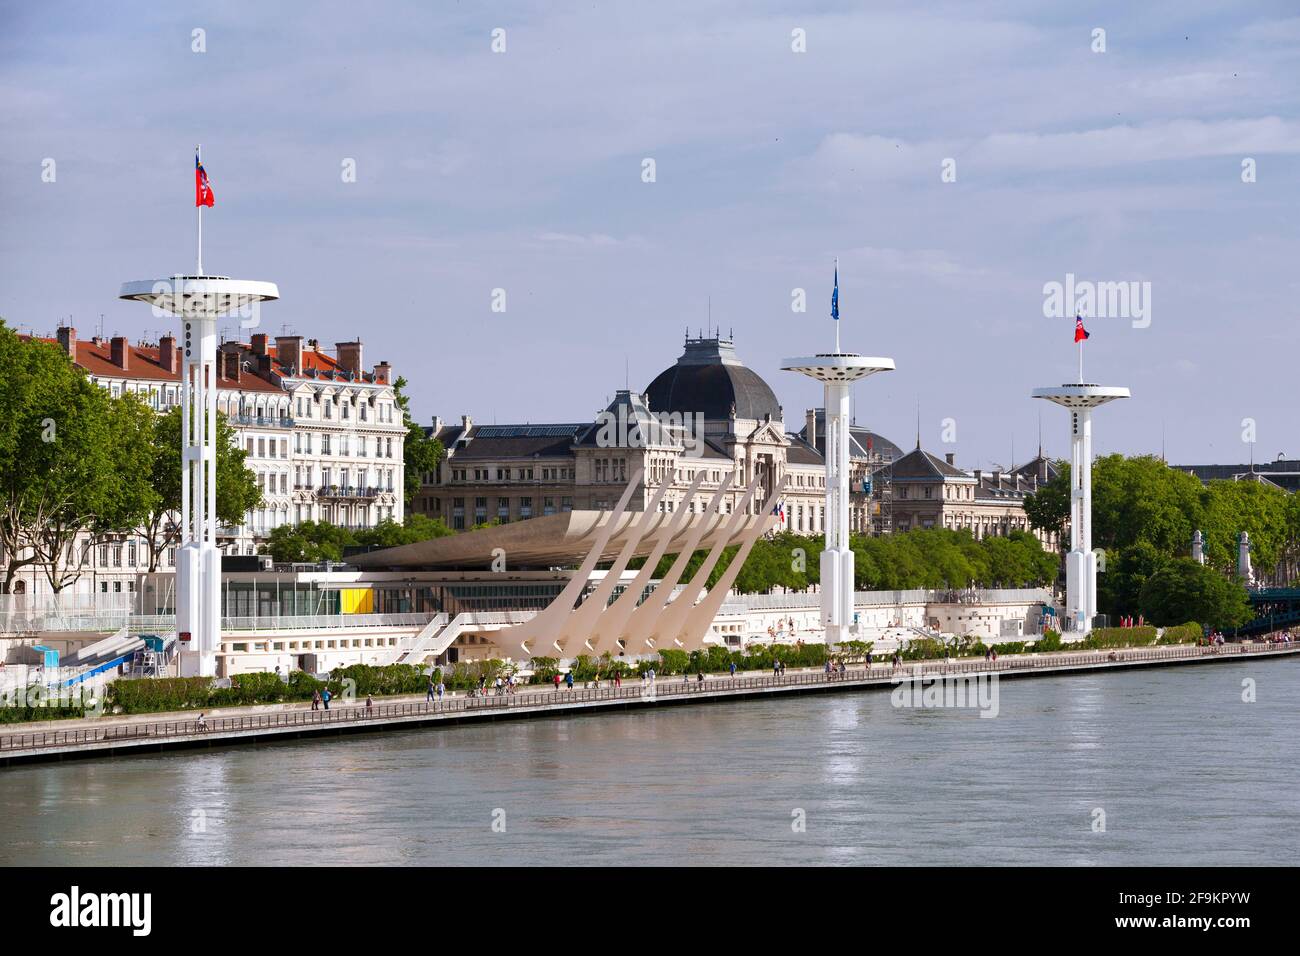 Lyon, Francia - Junio 10 2018: El Centre Nautique Tony Bertrand es un complejo de piscinas para nadadores de todos los niveles a lo largo del río Rhône Foto de stock